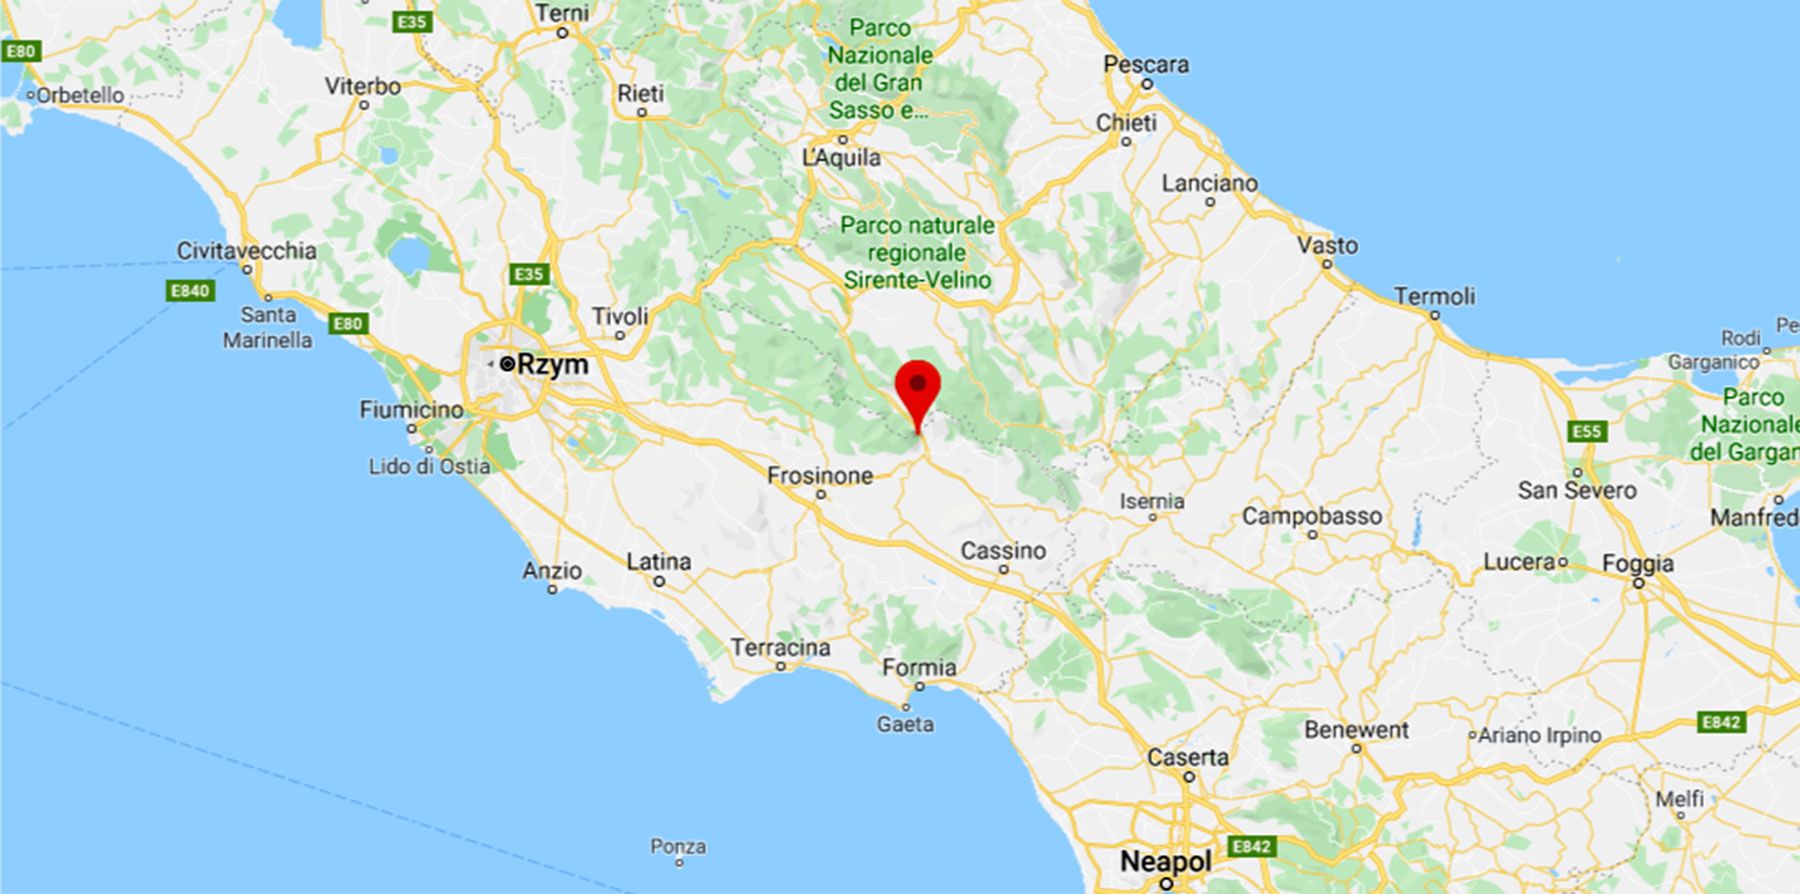 Włochy. Silne trzęsienie ziemi niedaleko Rzymu